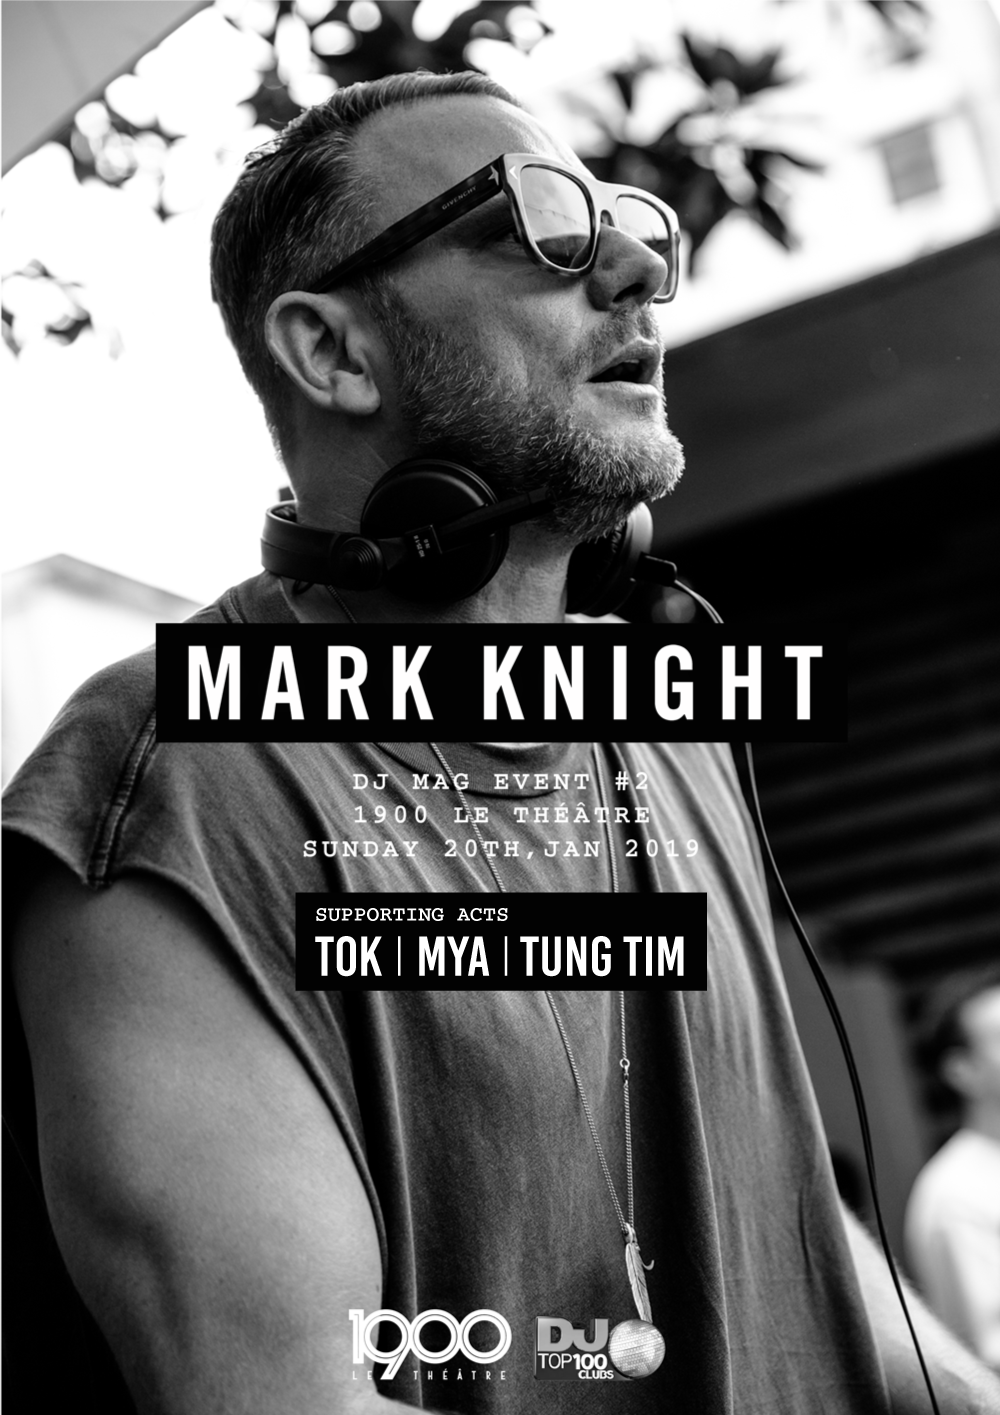 1900 x DJMAG #2: Mark Knight | Sun 20.1 [Event Hanoi]